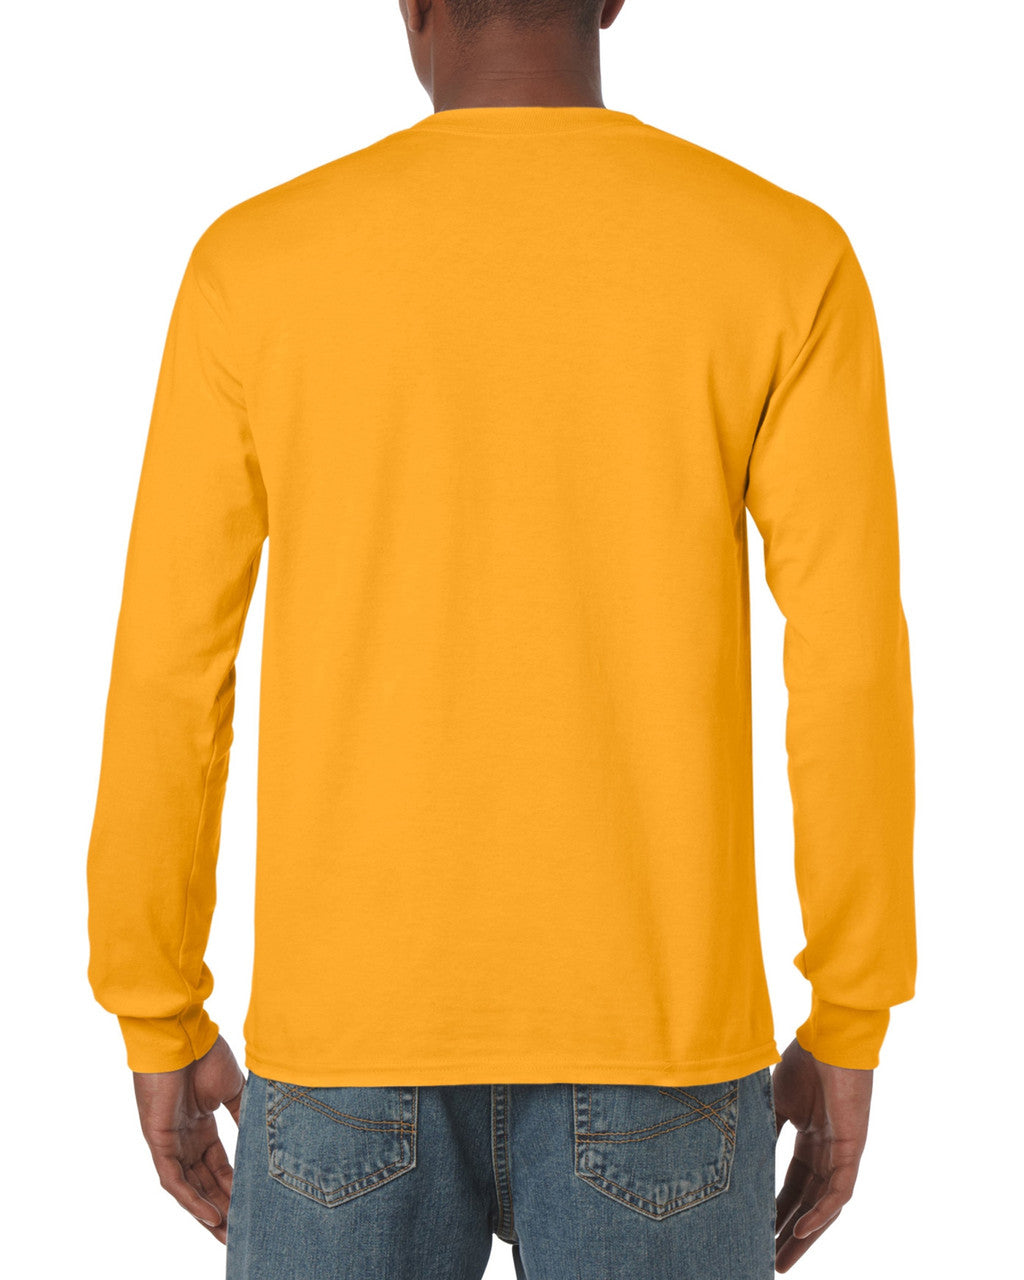 Long Sleeve T-Shirt - Gold